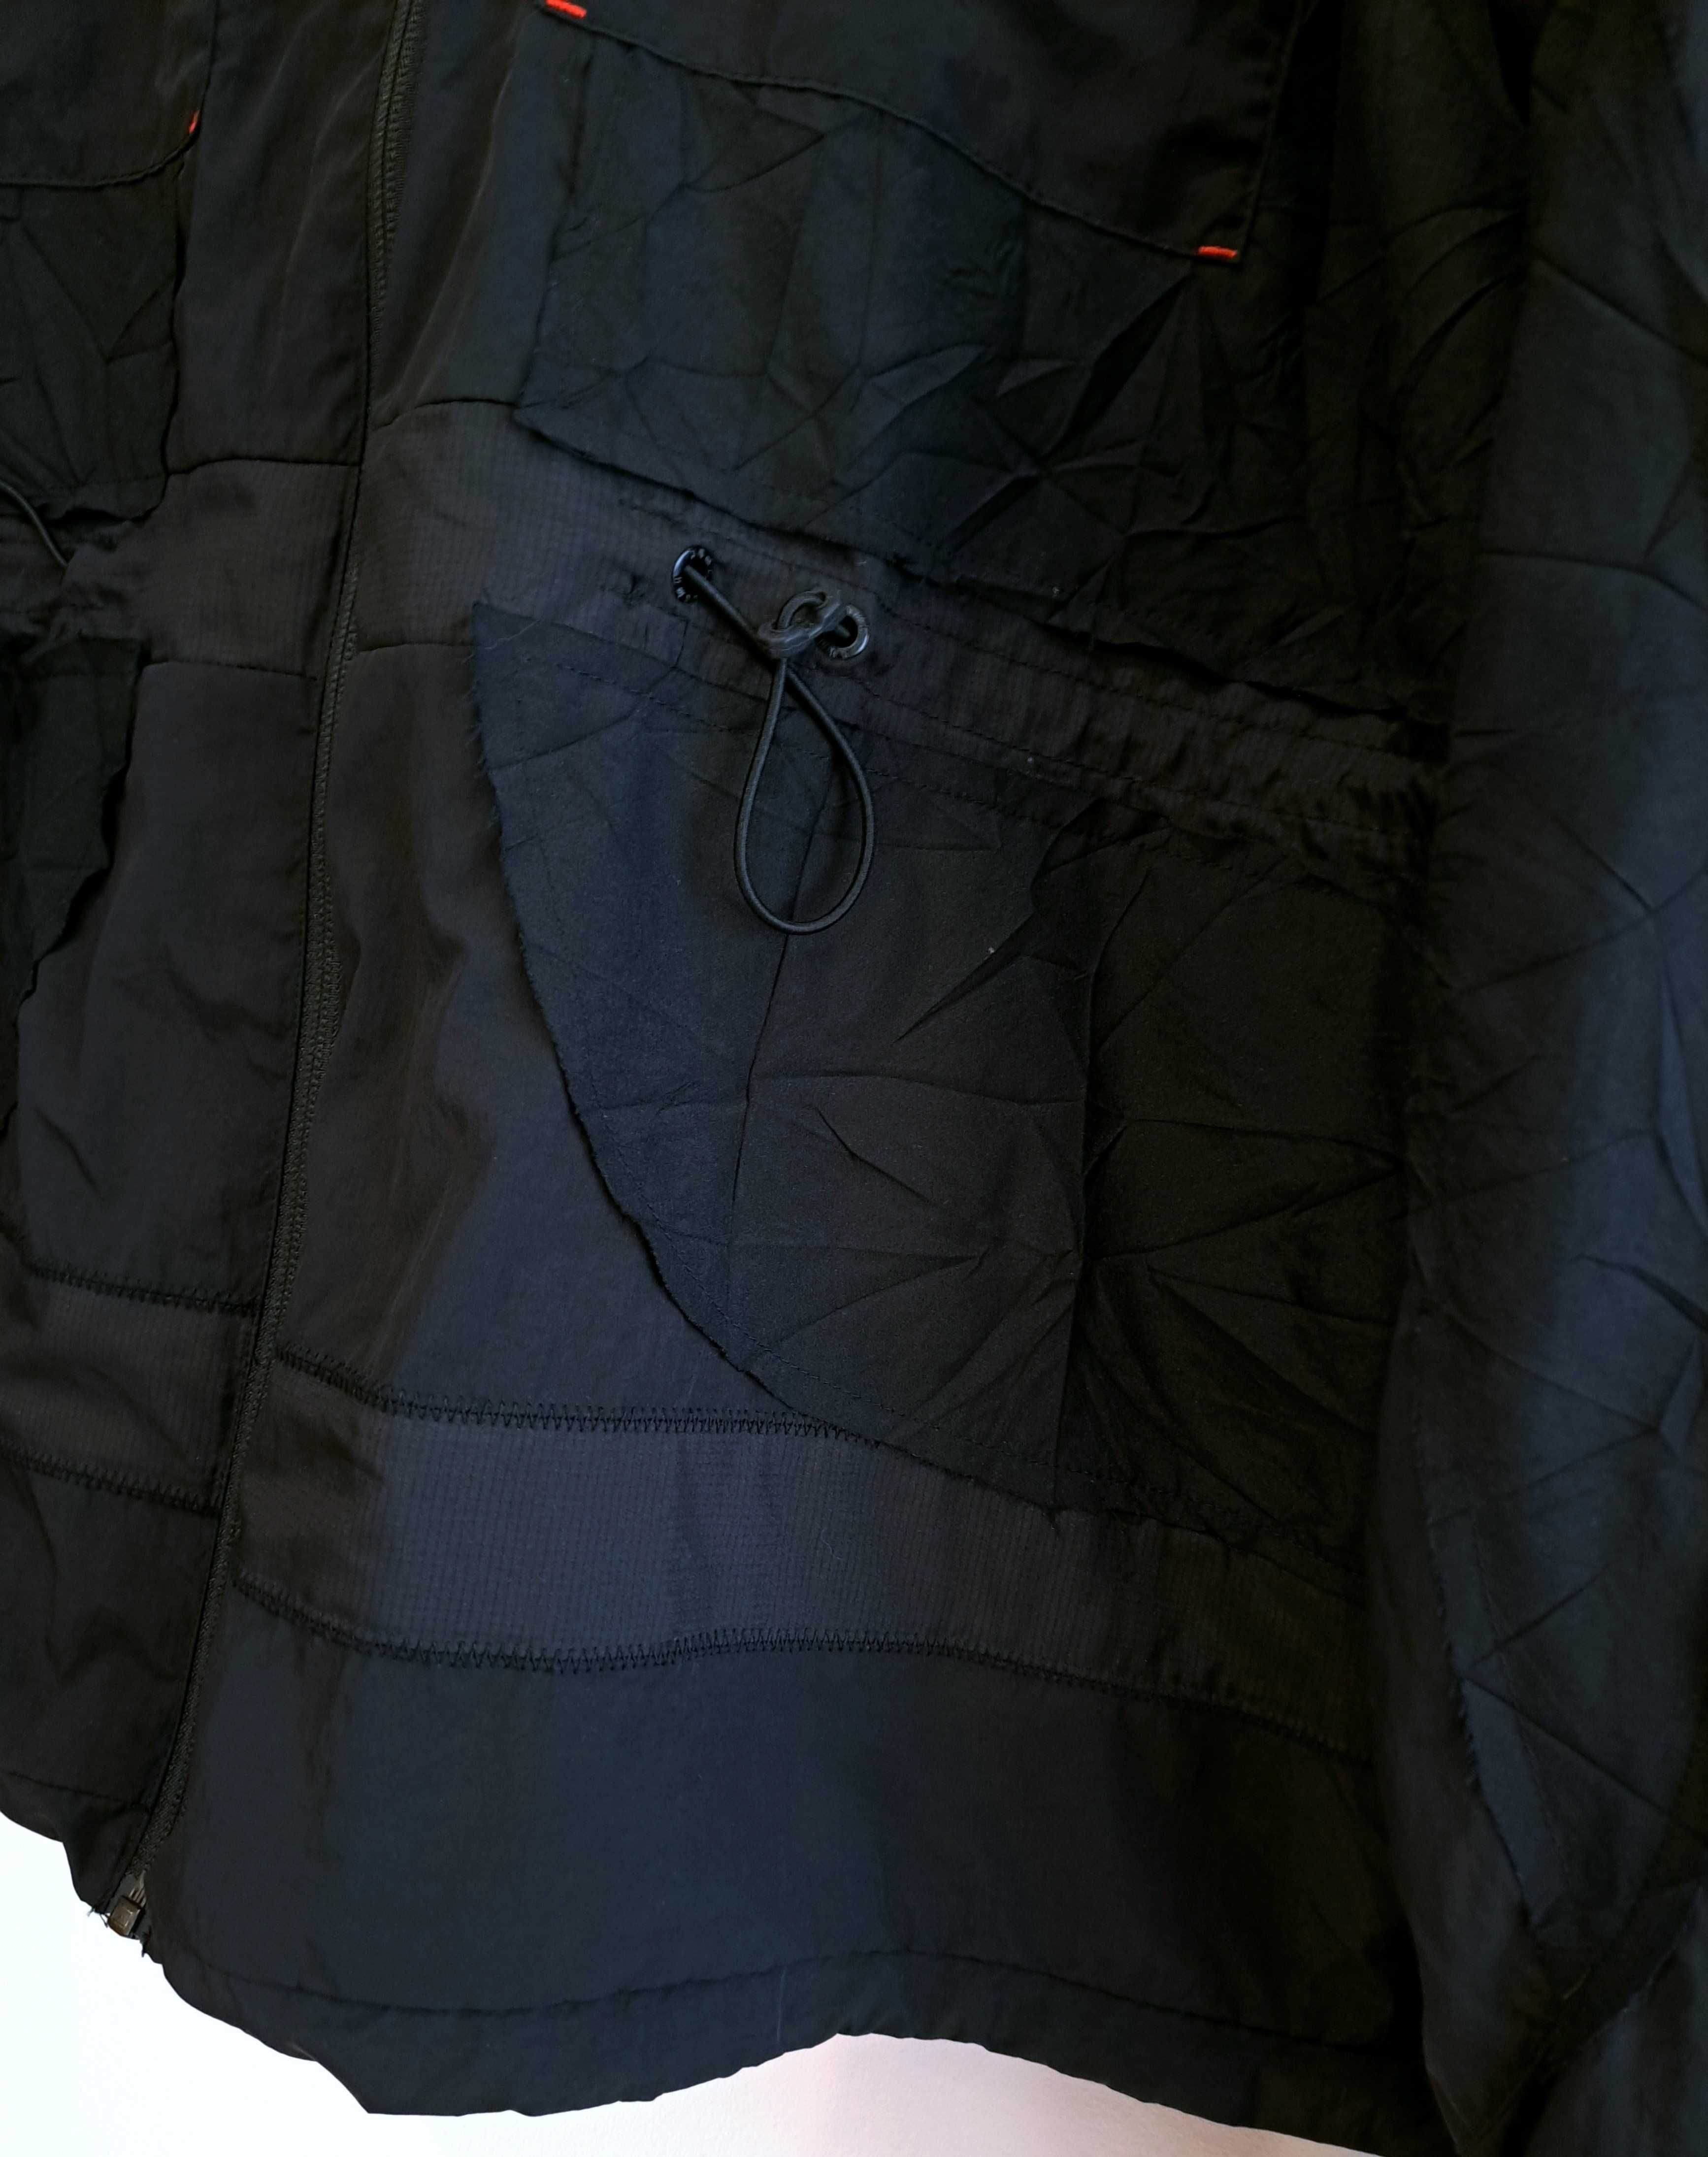 Куртка ветровка puma & jannik wikkelsø davidsen (размер L)